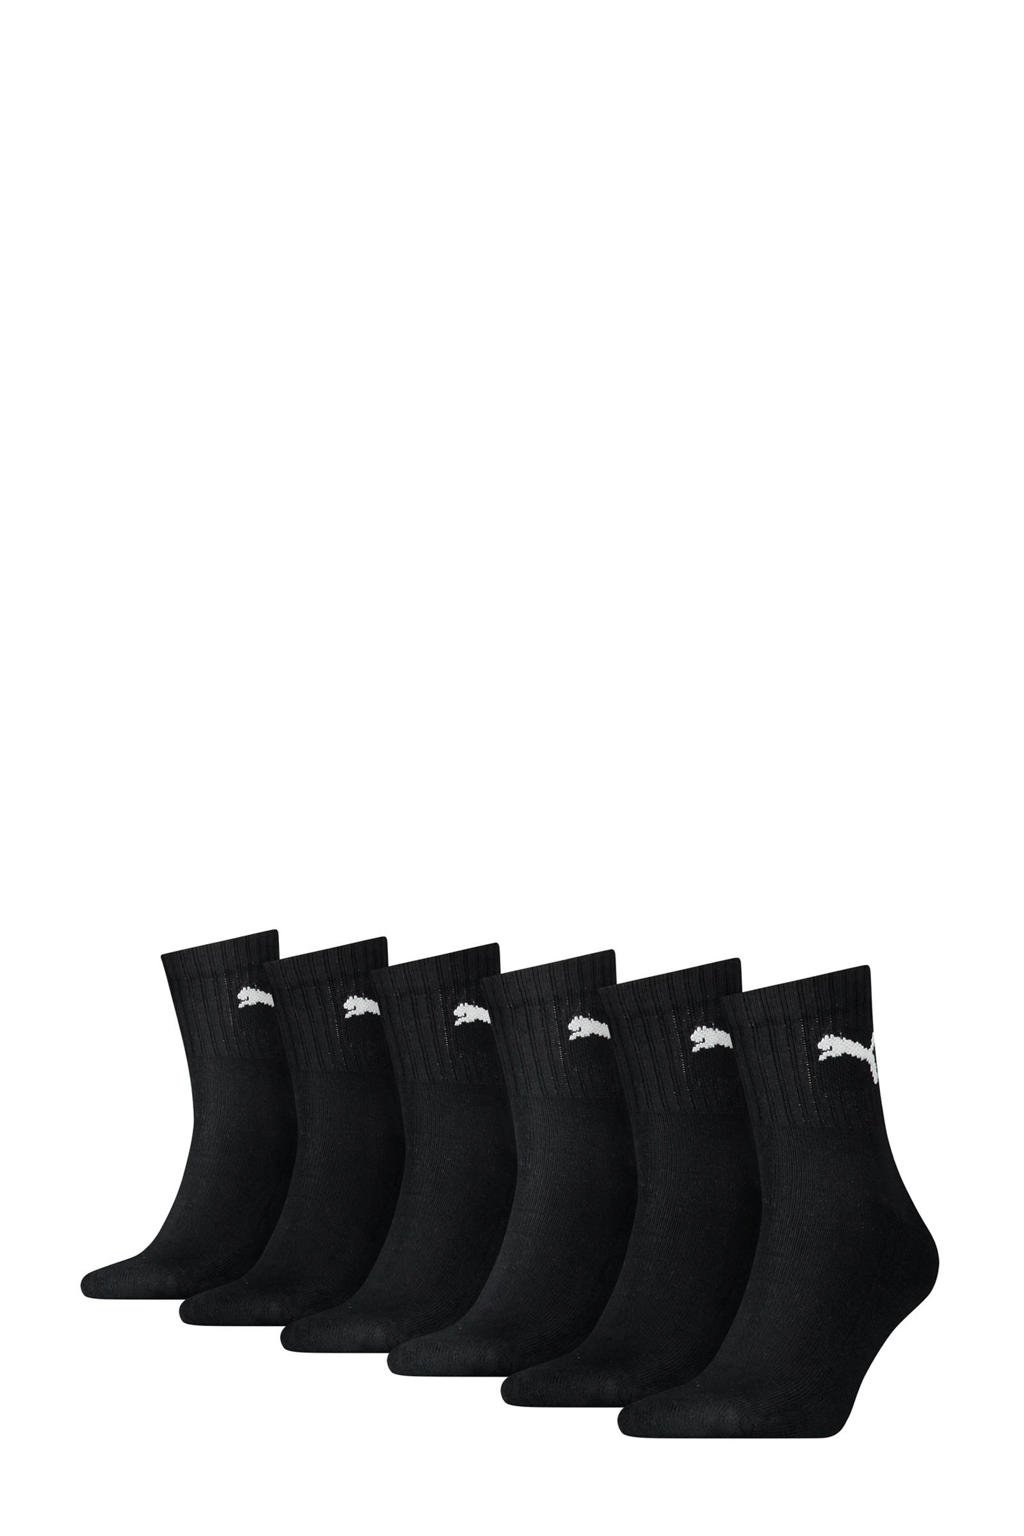 Puma sokken - set van 6 zwart